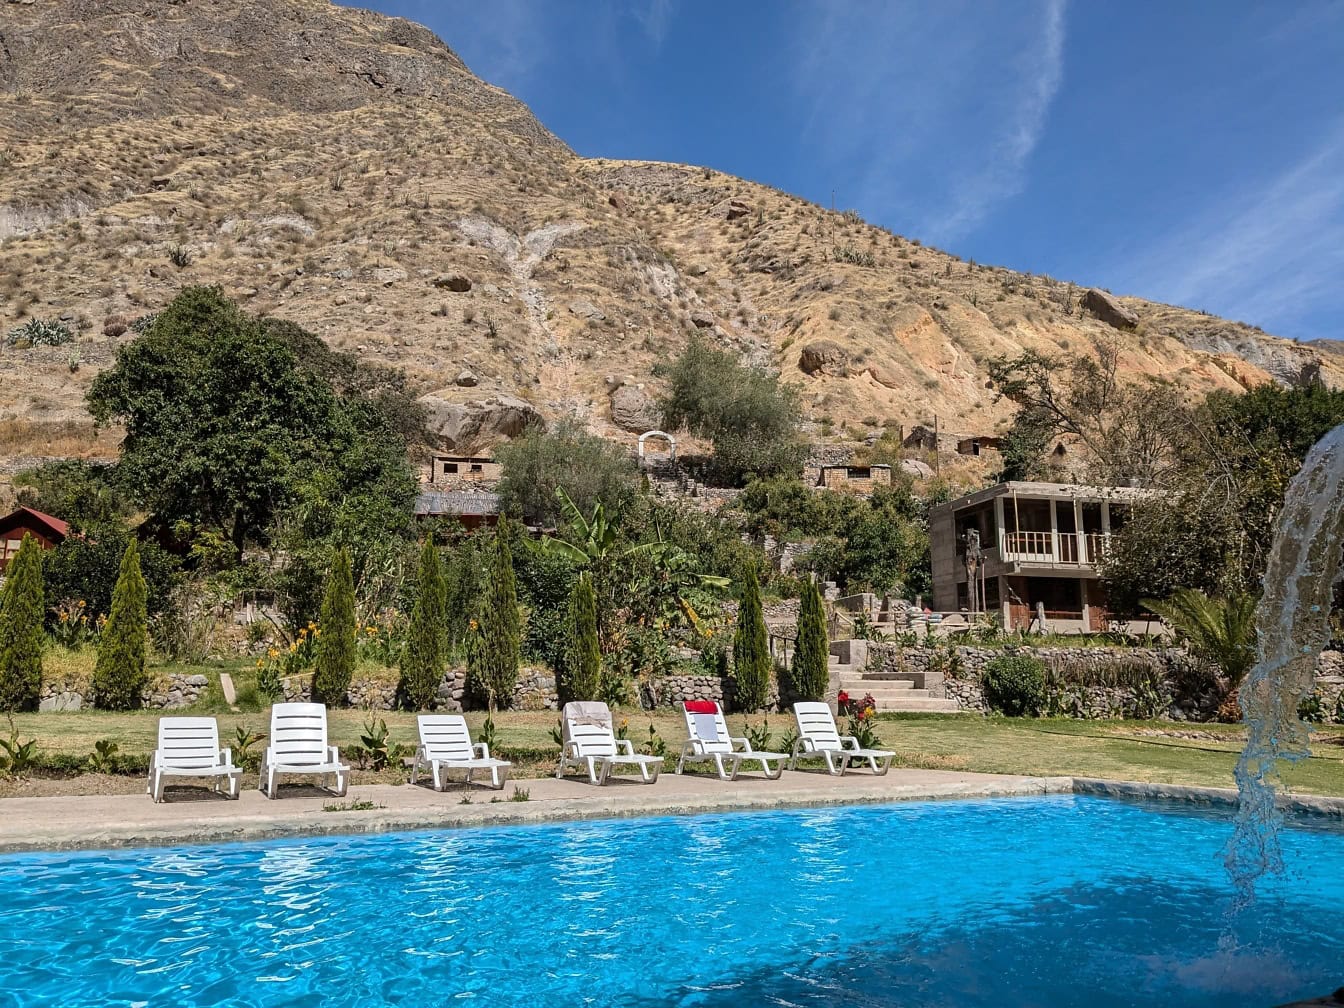 Malá oáza v kaňone Colca s bazénom a bielymi stoličkami na opaľovanie a malebným výhľadom na peruánske hory v pozadí